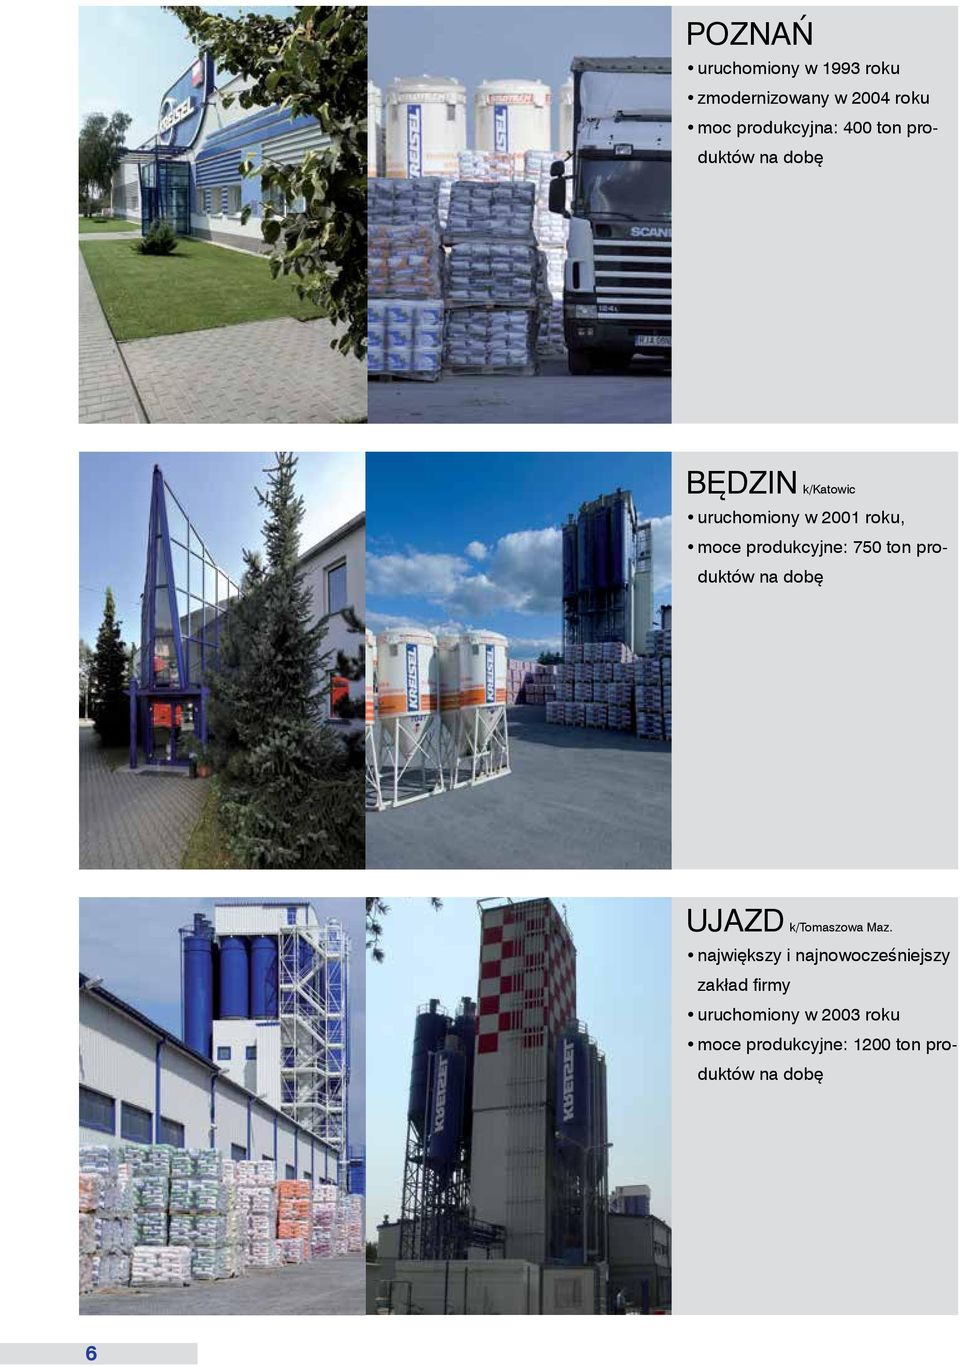 750 ton produktów na dobę UJAZD k/tomaszowa Maz.